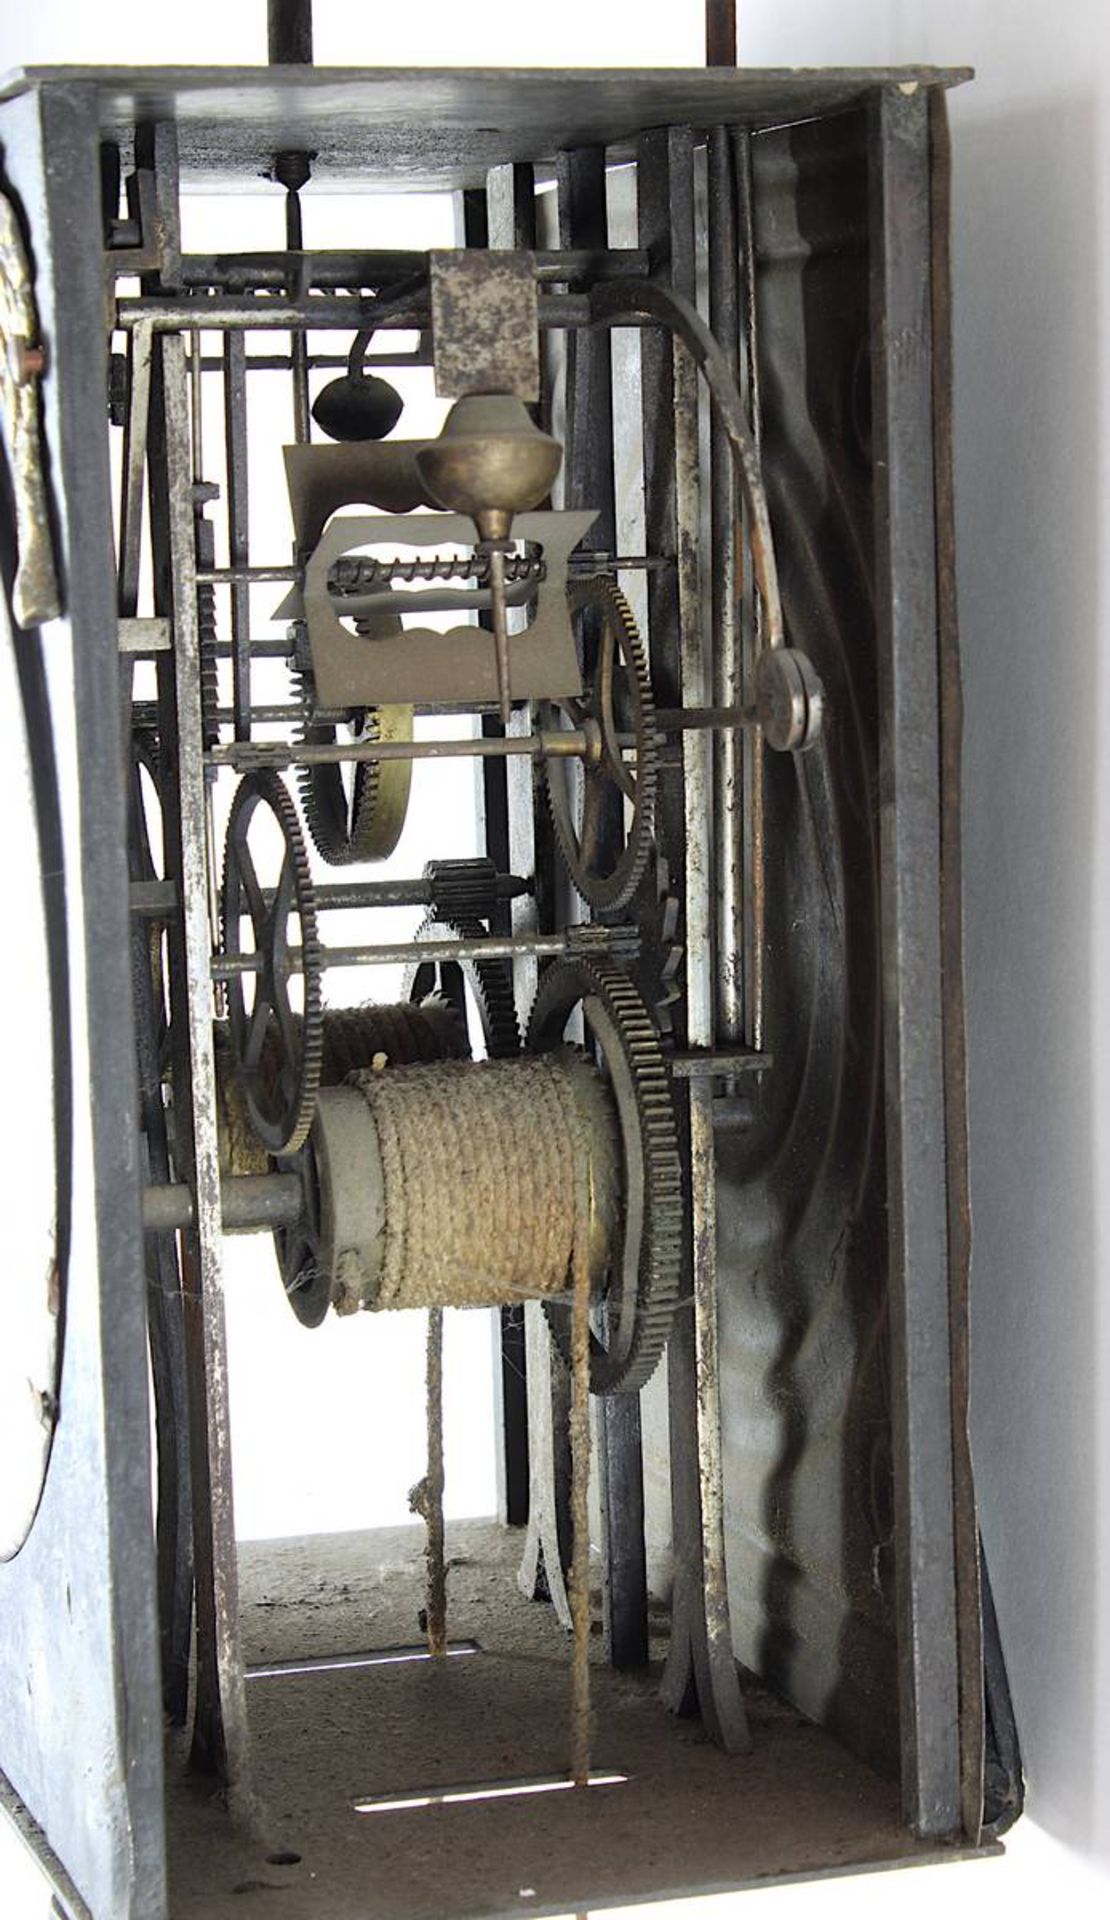 Comtoise mit Glocke und Spindelwerk, Frankreich Anf. 19. Jh., Eisengehäuse, weißes emailliertes Ziff - Bild 2 aus 2